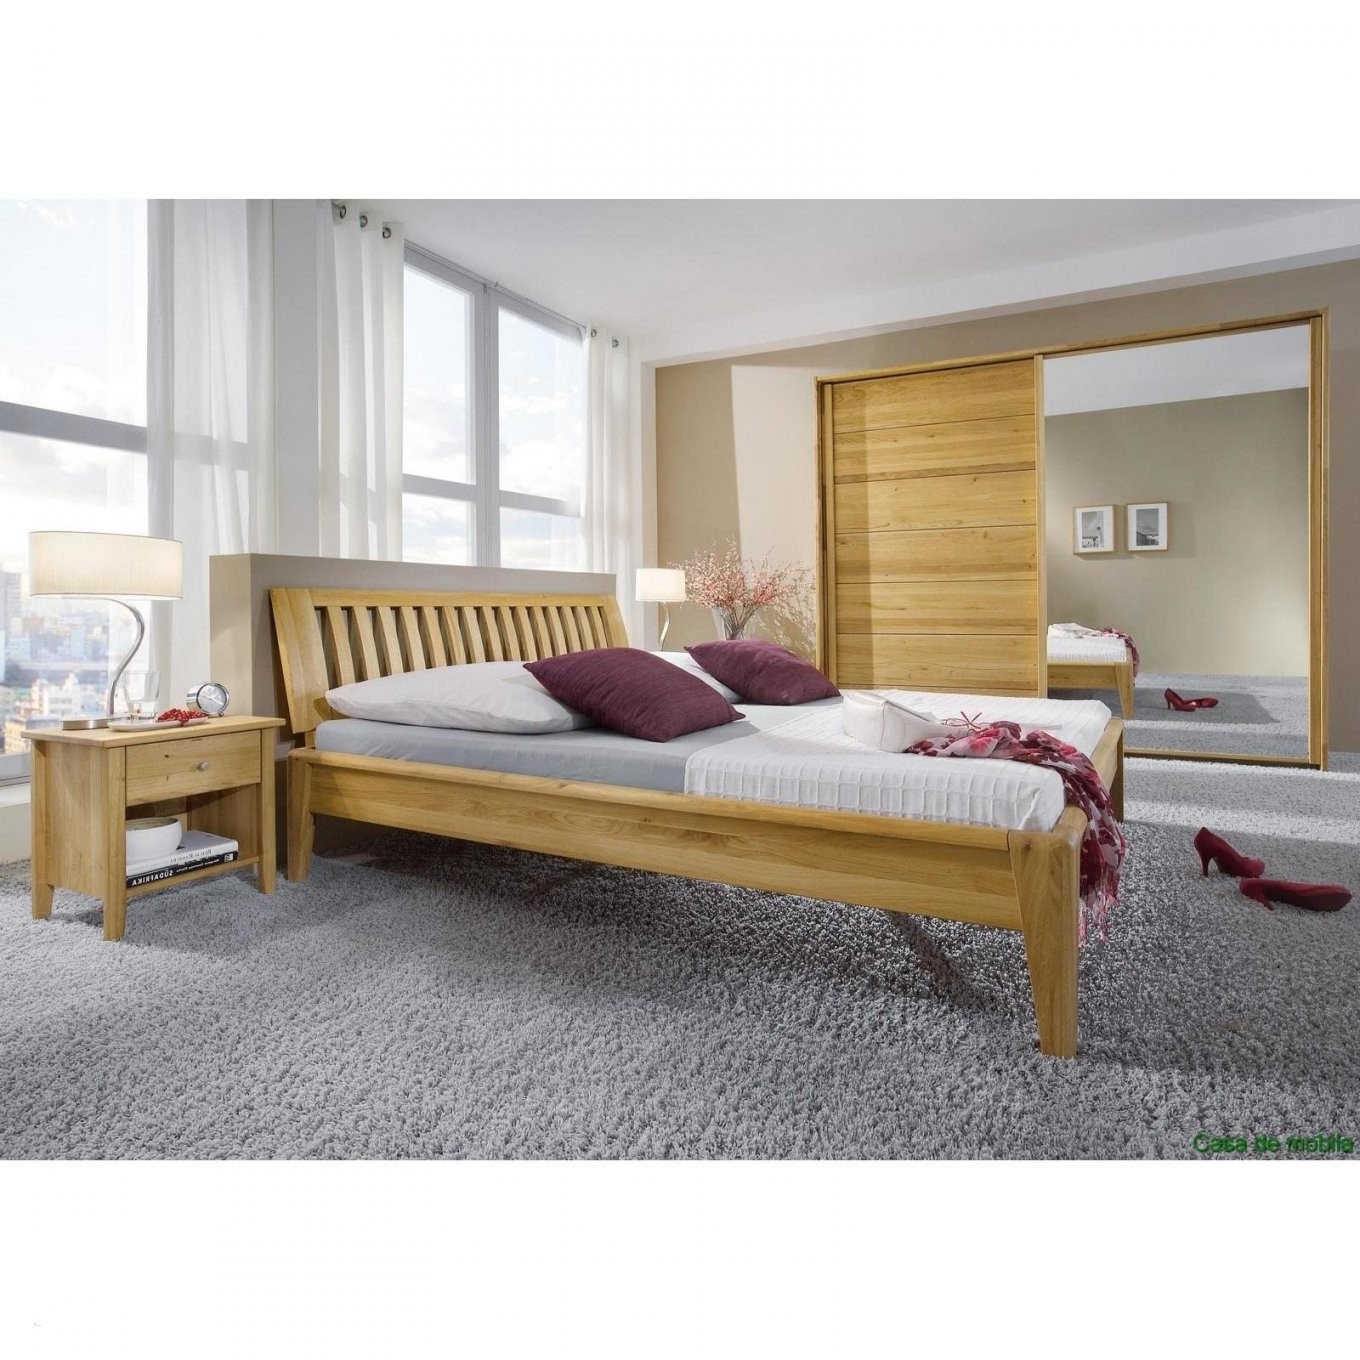 Neu Schlafzimmer Komplett Bett 200X200 Immobilierneufstrasbourg von Komplett Bett 200X200 Bild